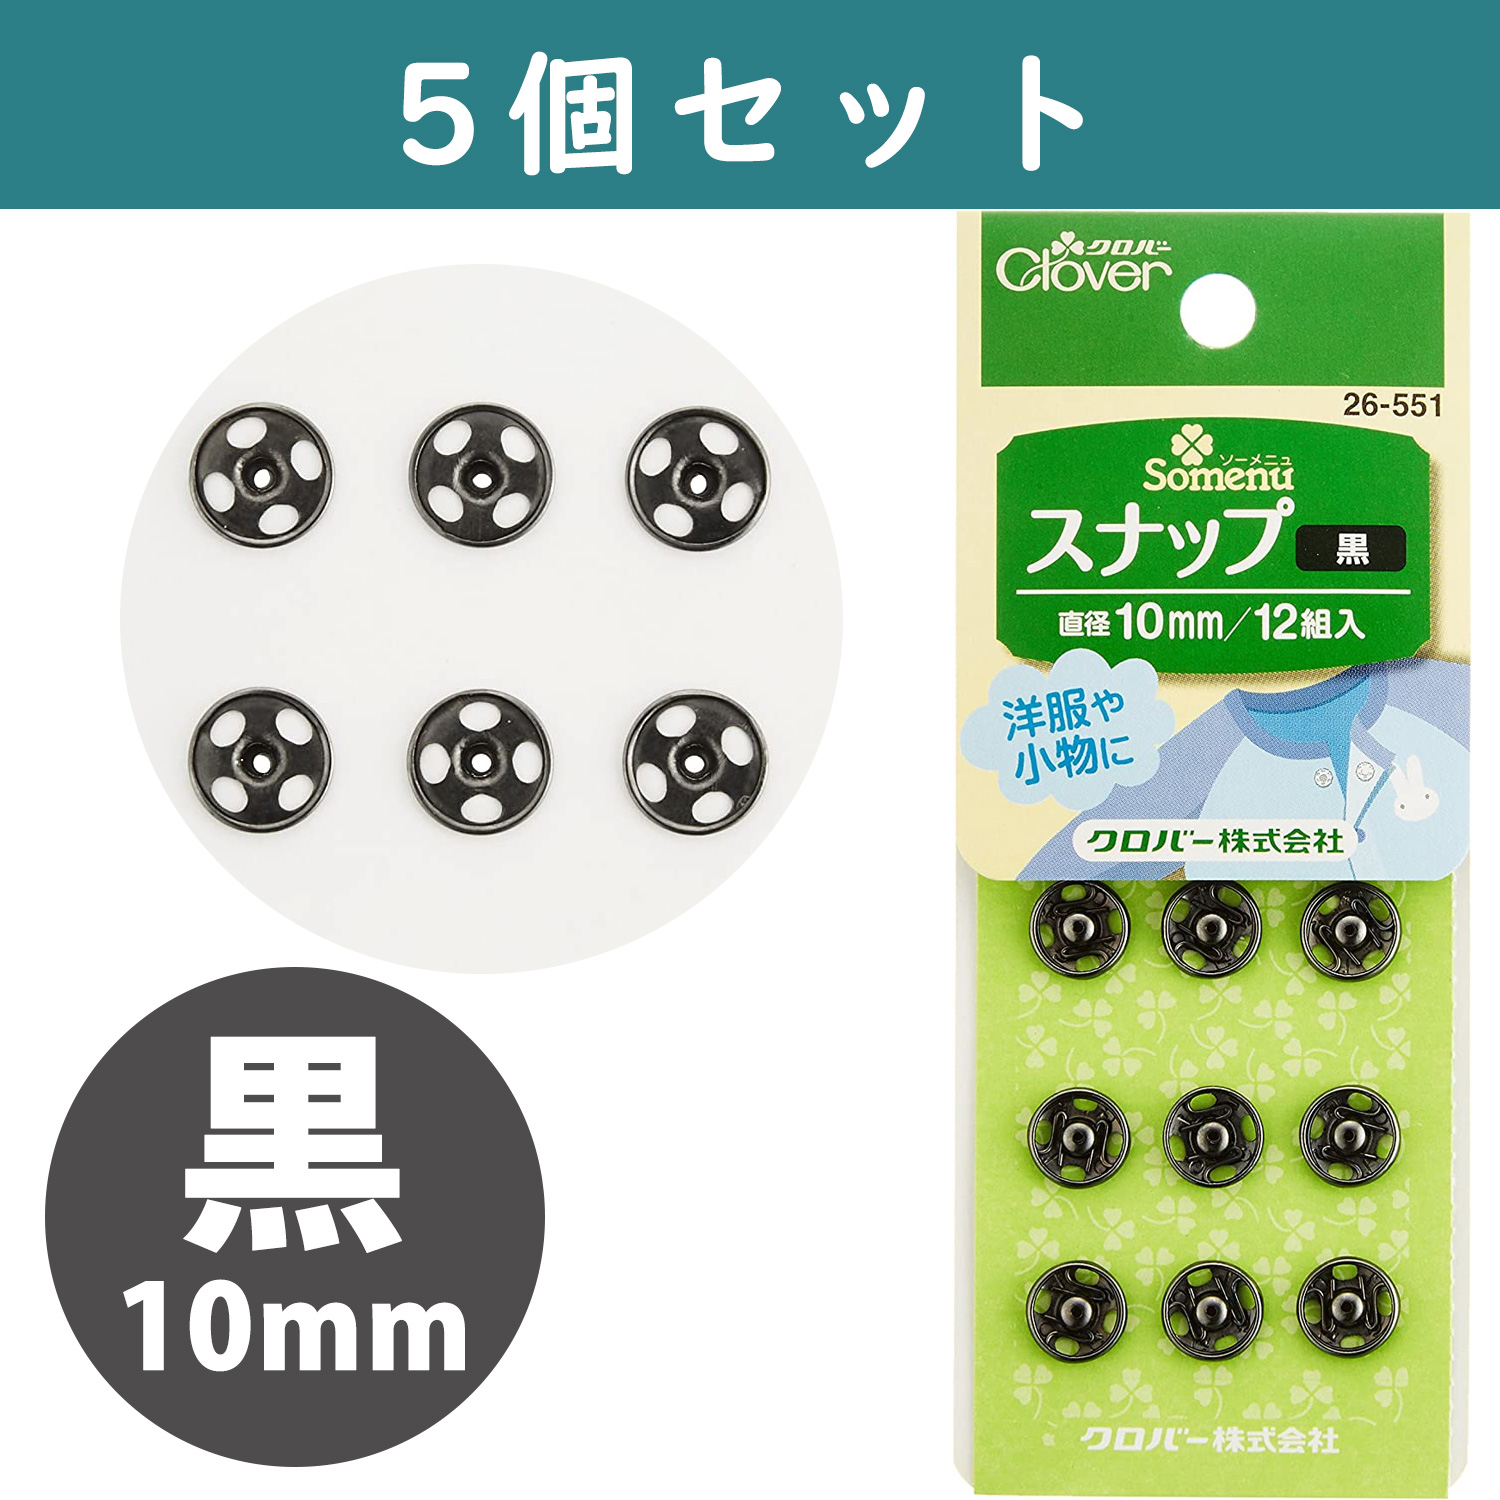 ■【5個】CL26-551-5set スナップ 10mm 12組入り 黒 ×5個　(セット)